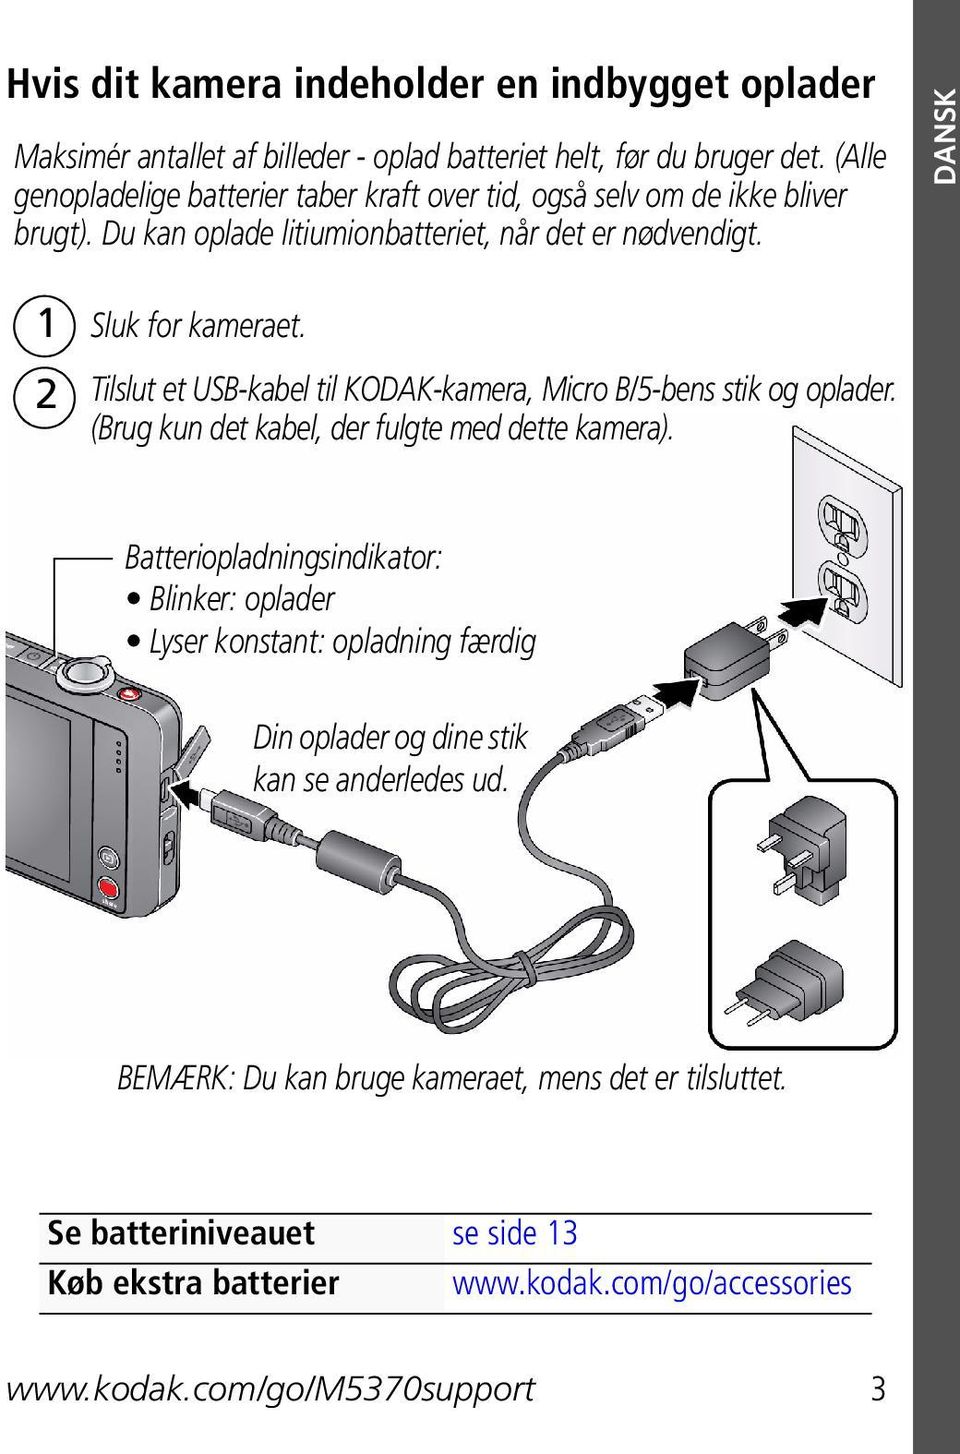 Tilslut et USB-kabel til KODAK-kamera, Micro B/5-bens stik og oplader. (Brug kun det kabel, der fulgte med dette kamera).